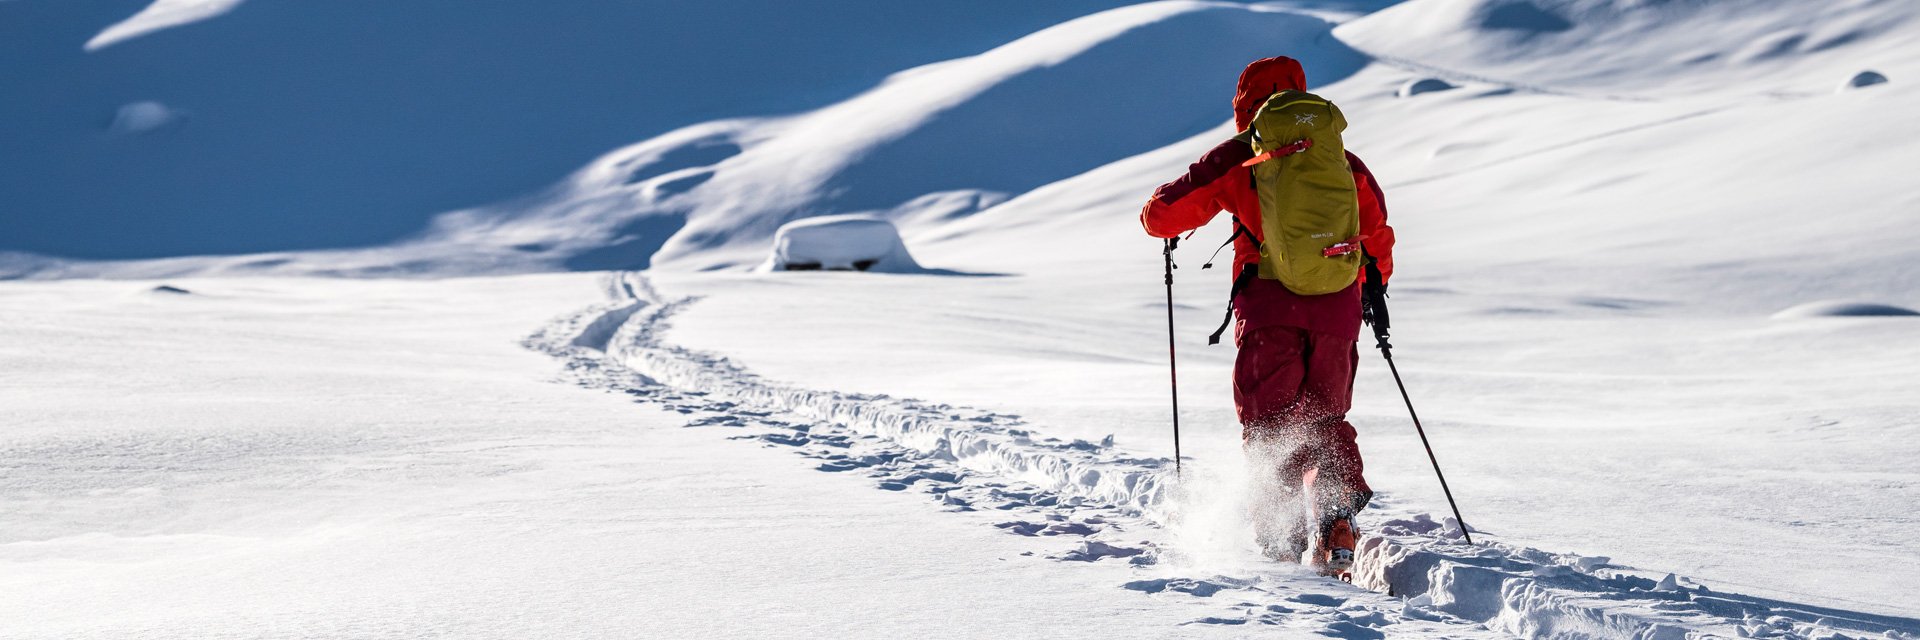 Vše, co budete potřebovat na skitourové výšlapy. Skitourové oblečení – jak se správně obléct?